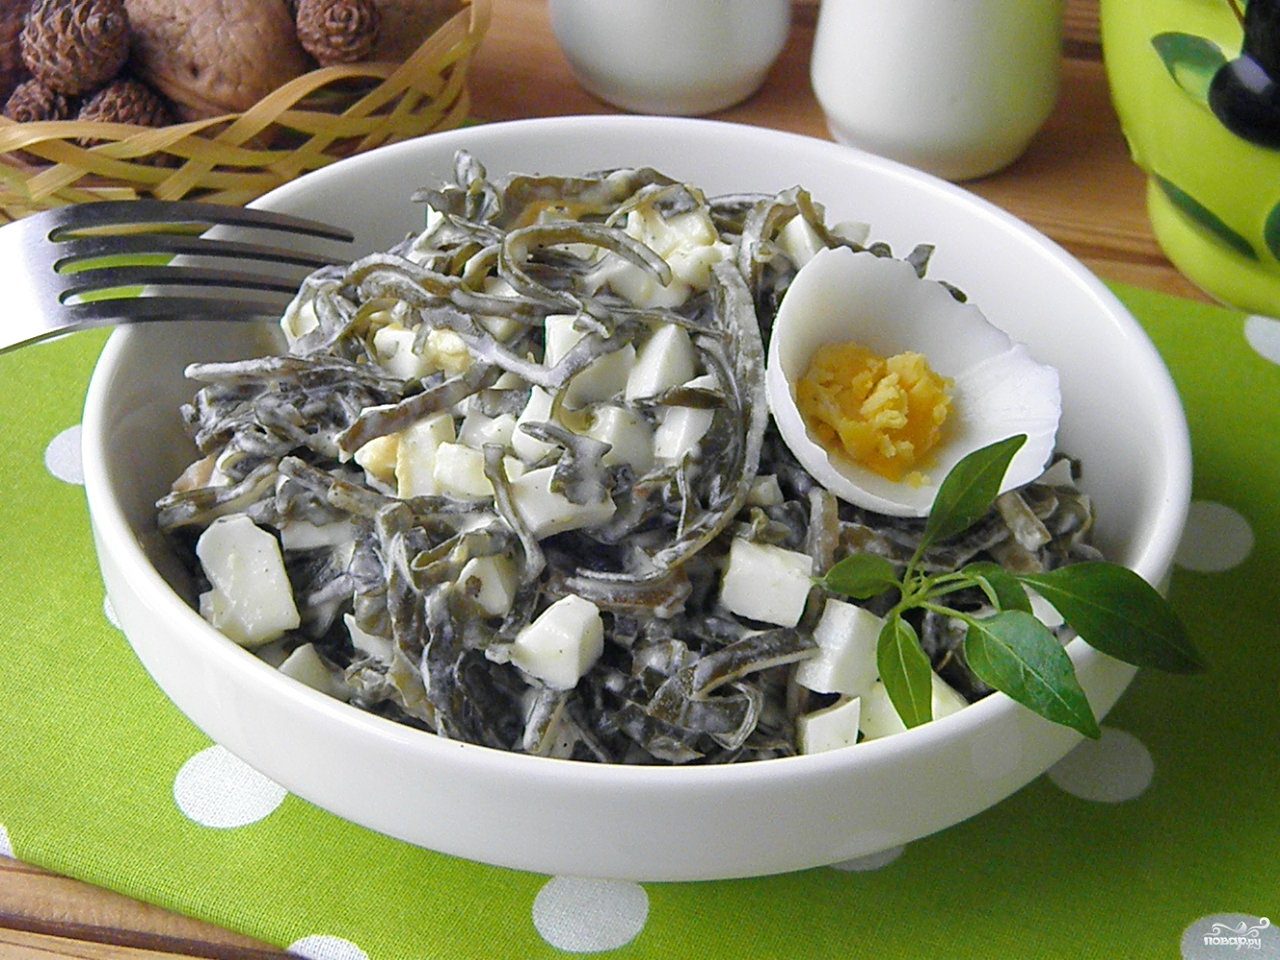 Фото на тему: Вкусный салат из морской капусты. Рецепт